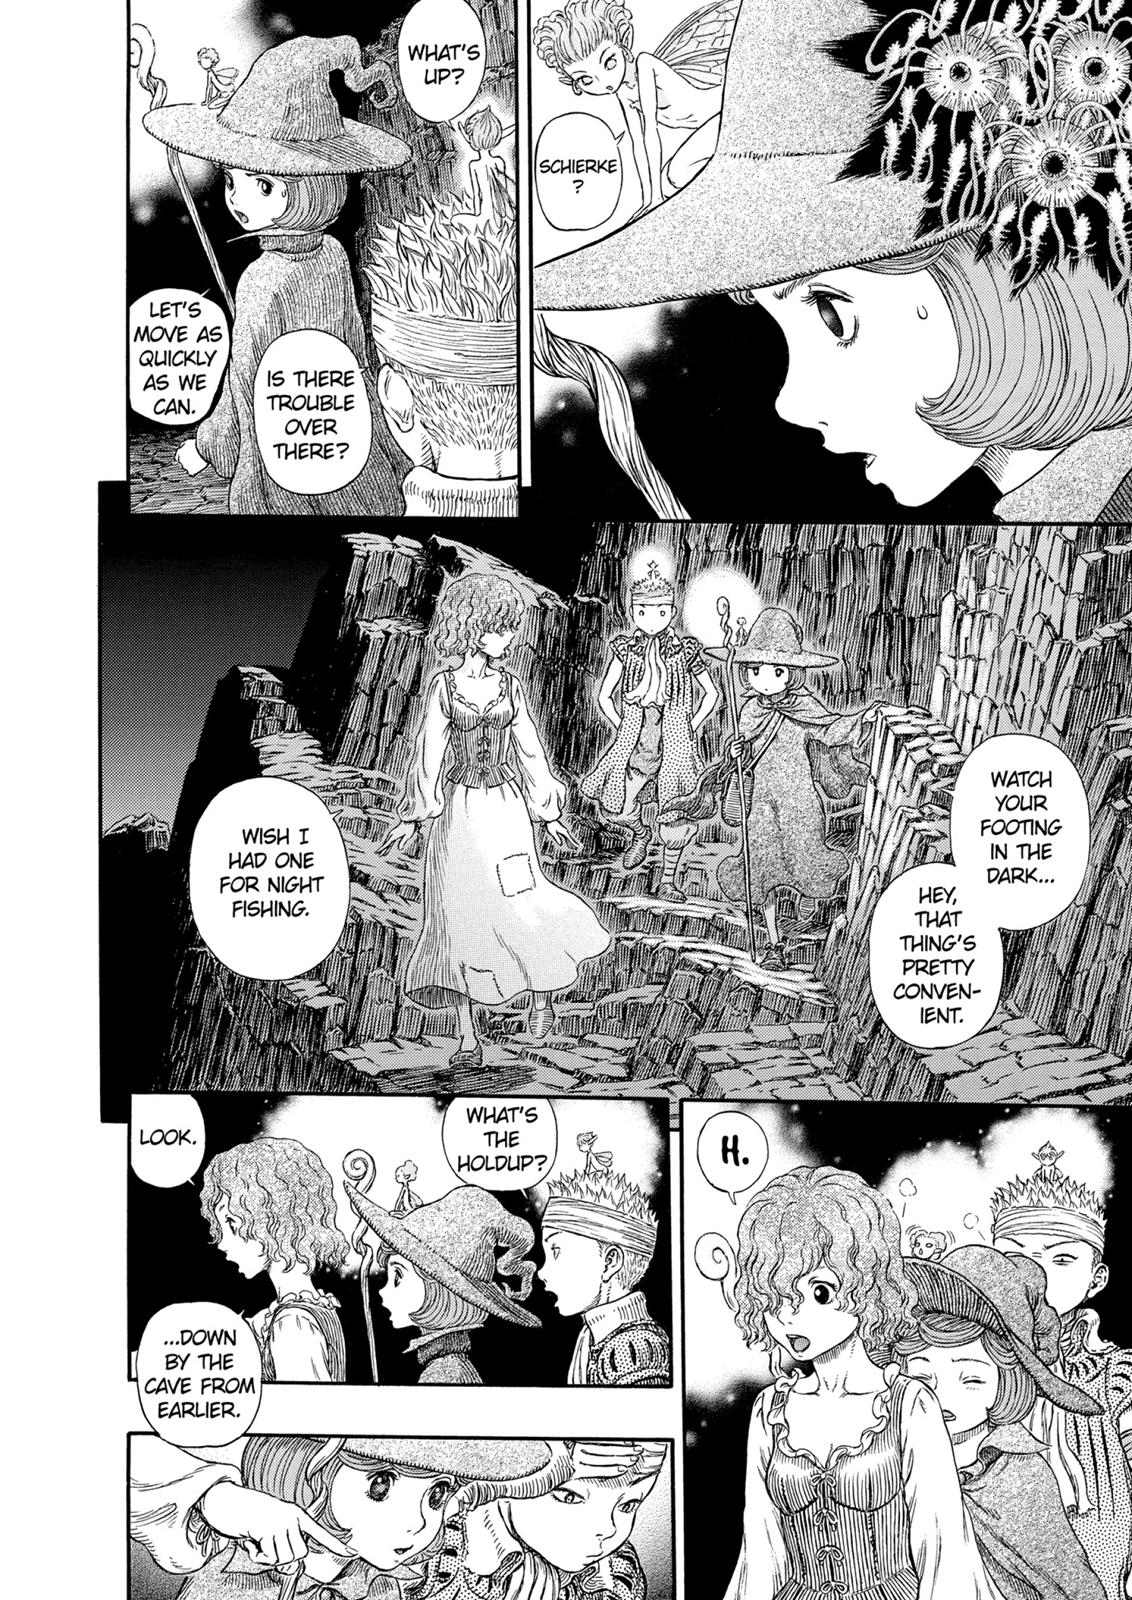 Berserk Manga Chapter 314 image 13